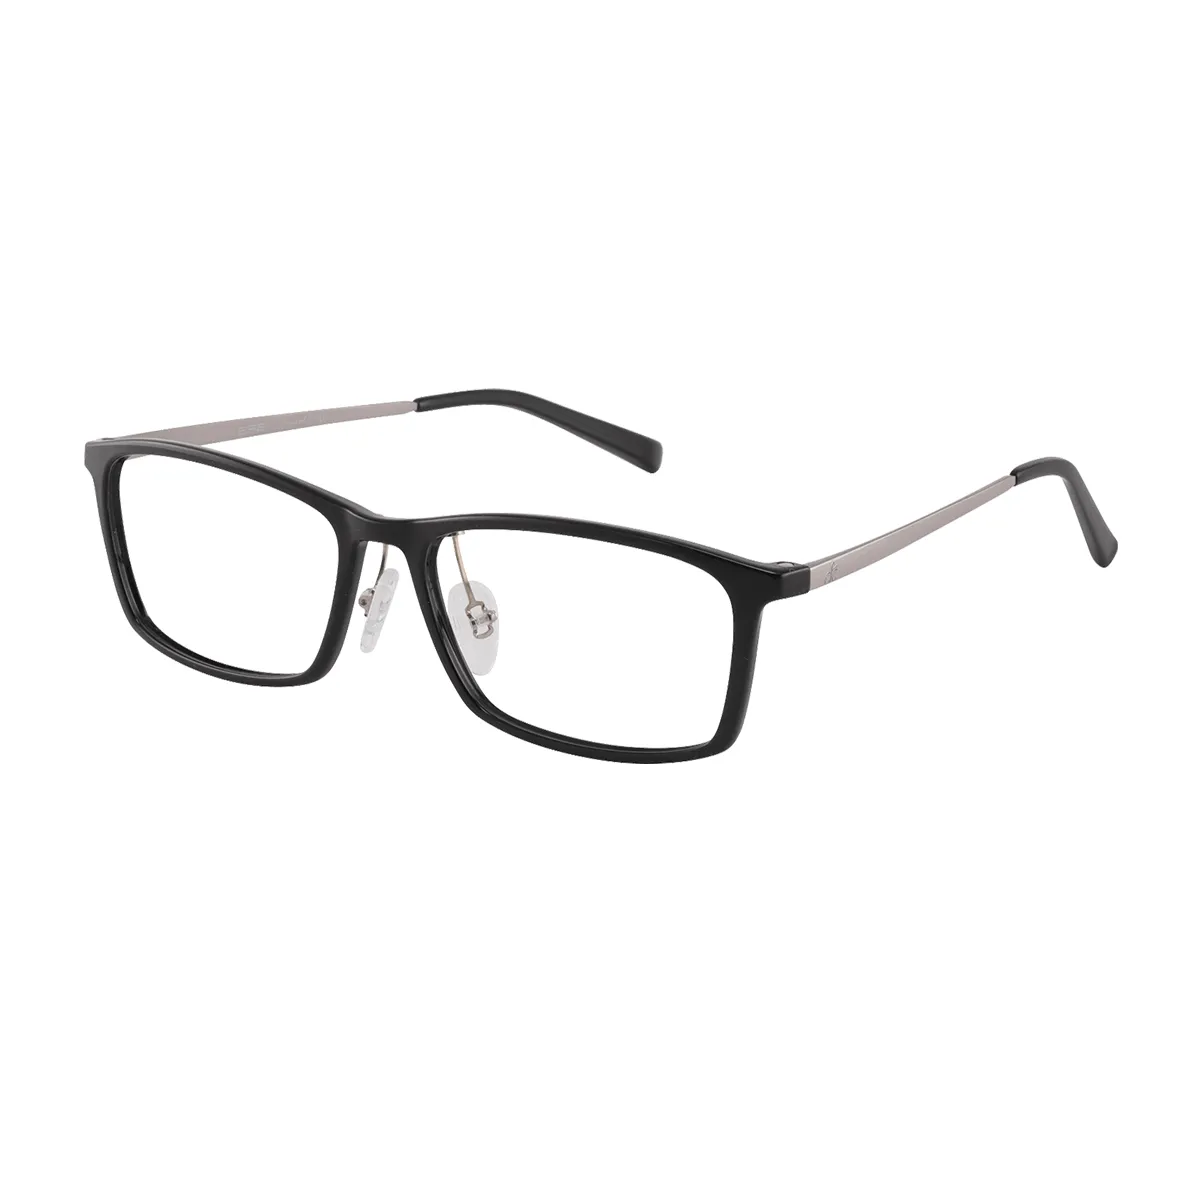 Alven - Rectangle Black Glasses for Men & Women - EFE